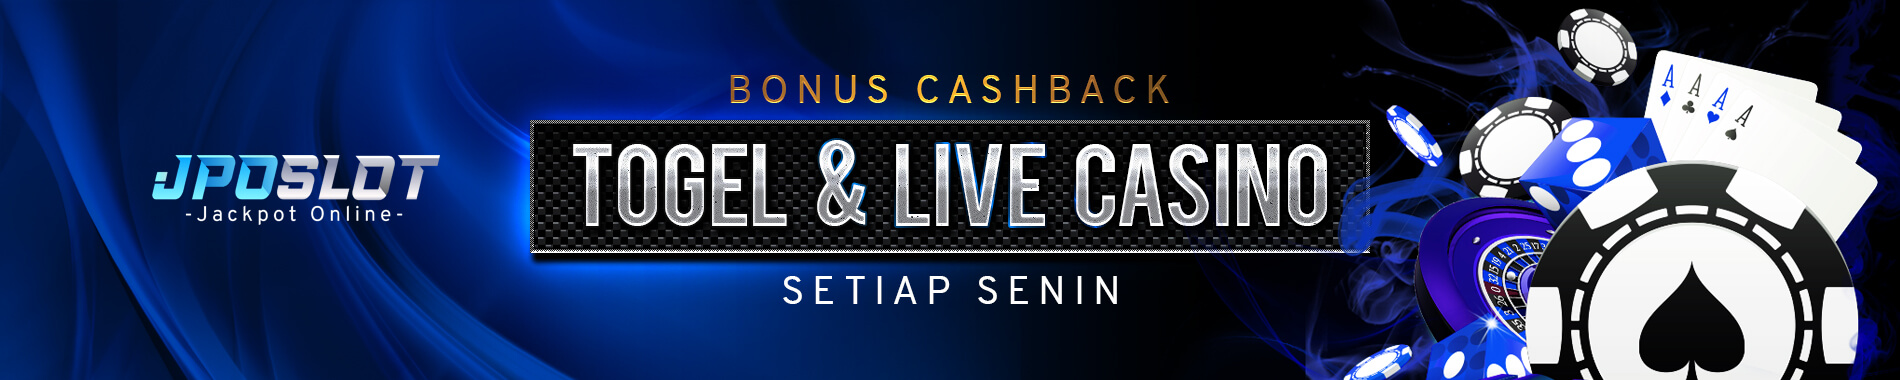 bonus cashback togel dan live kasino